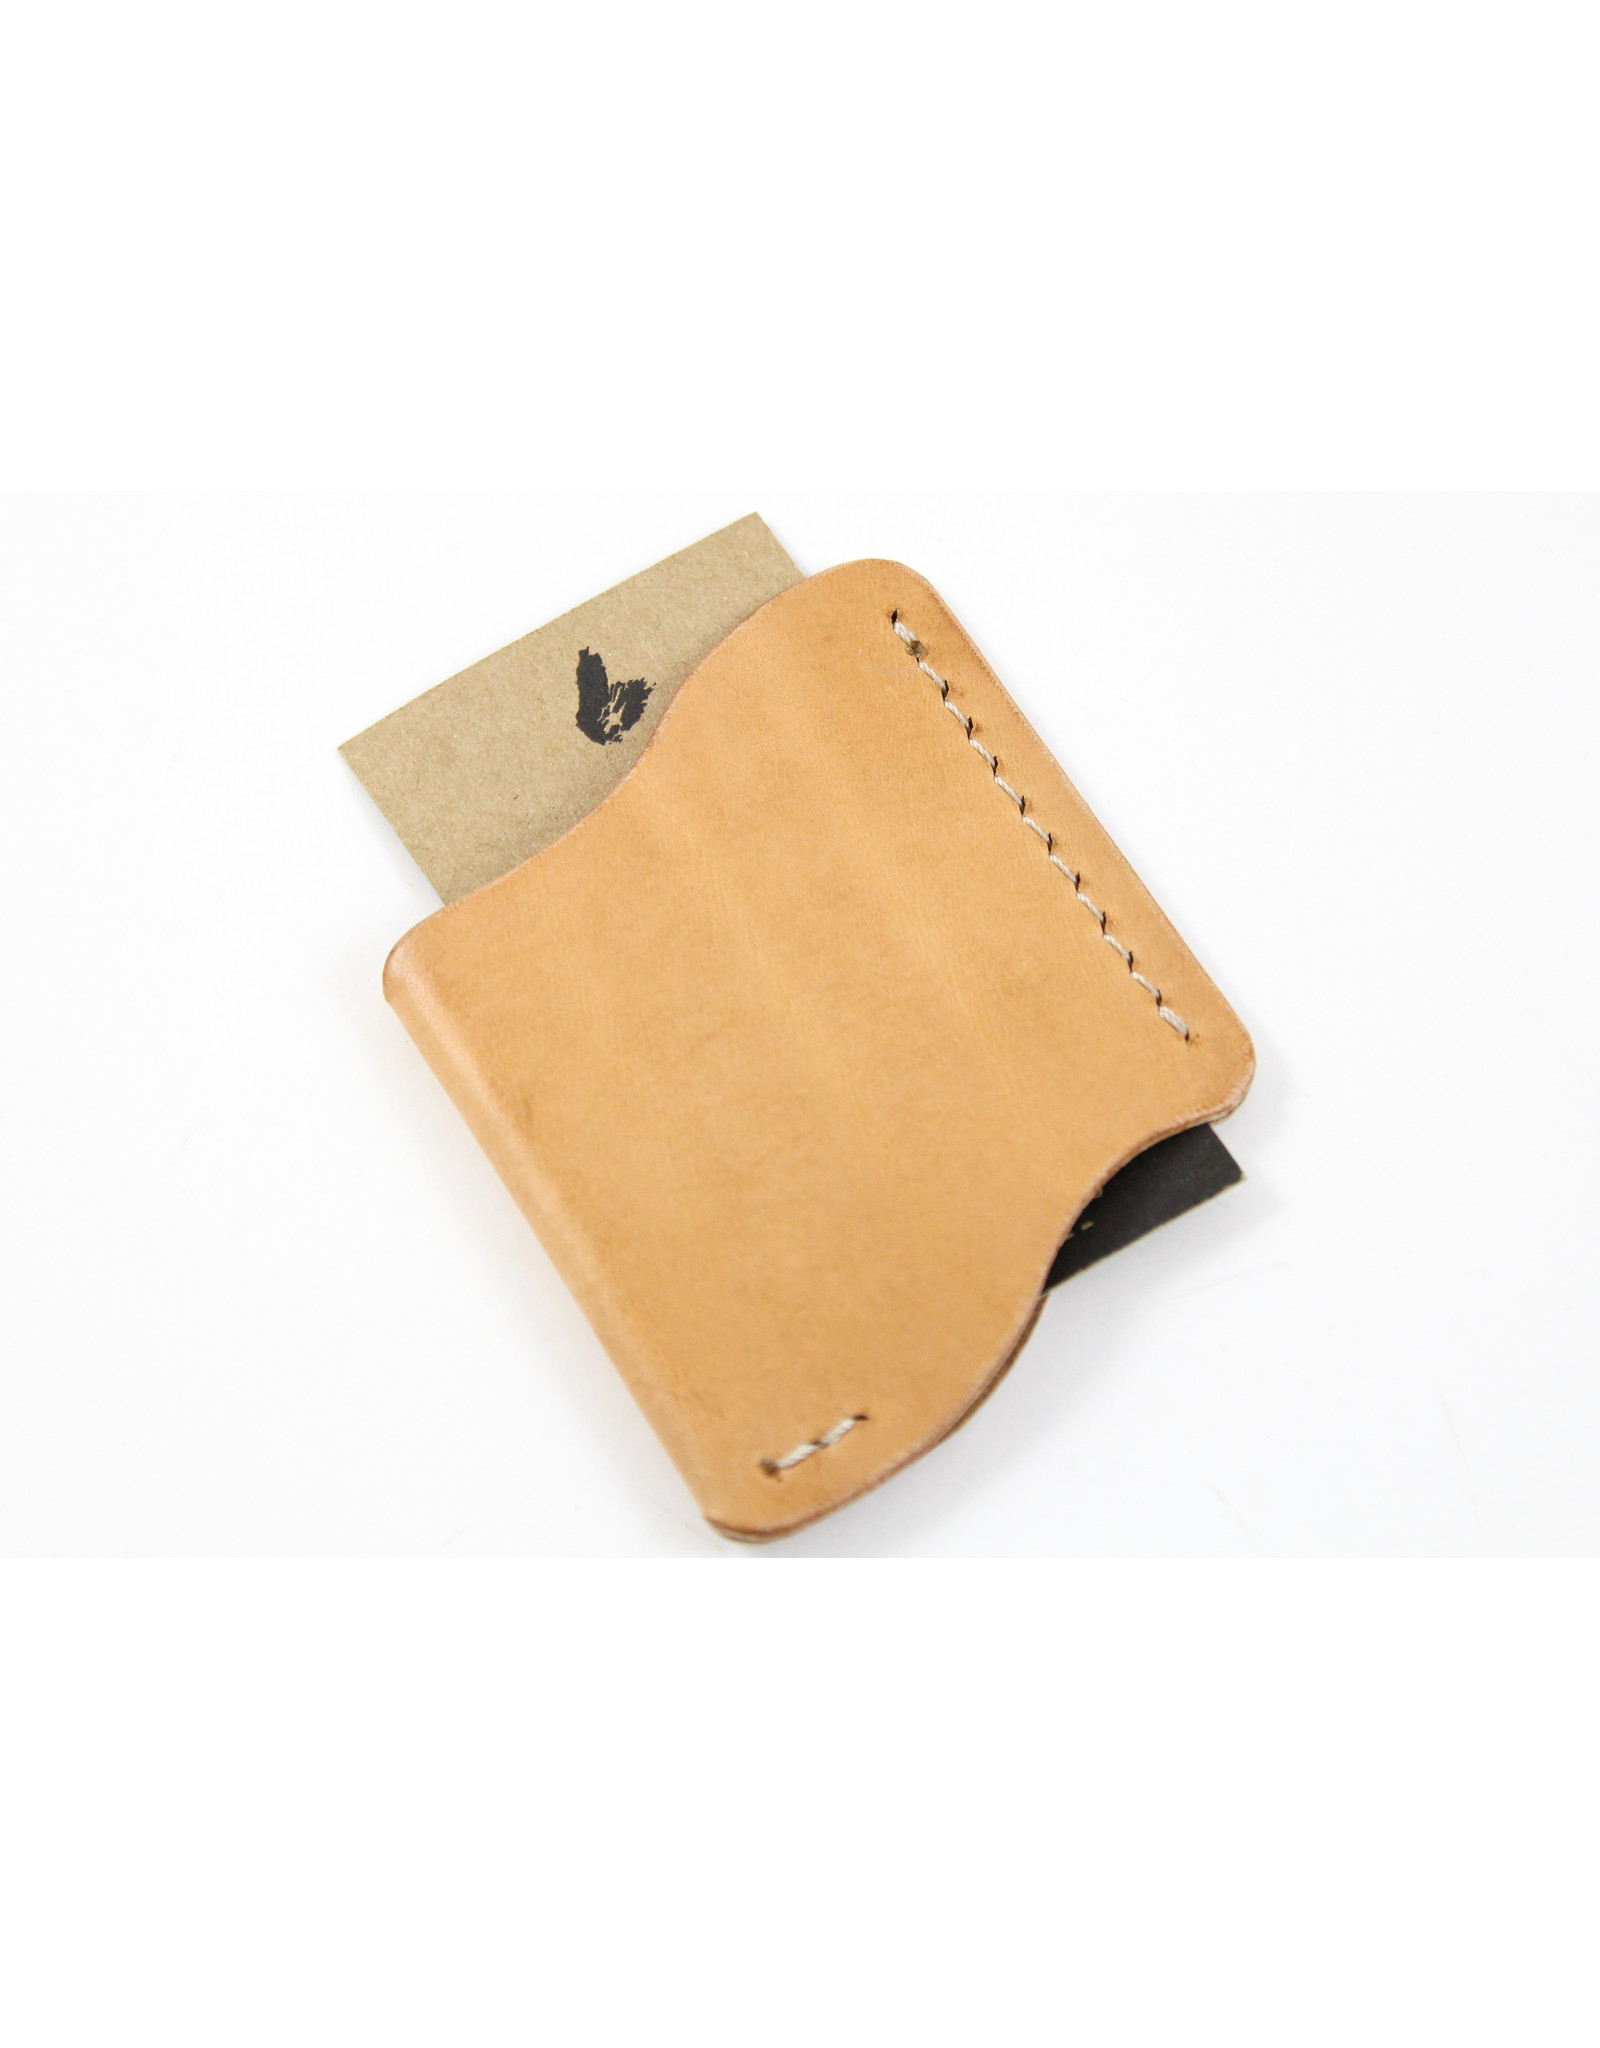 Kyle McPhee Oban Single Sleeve Wallet by Phee's Original Goods